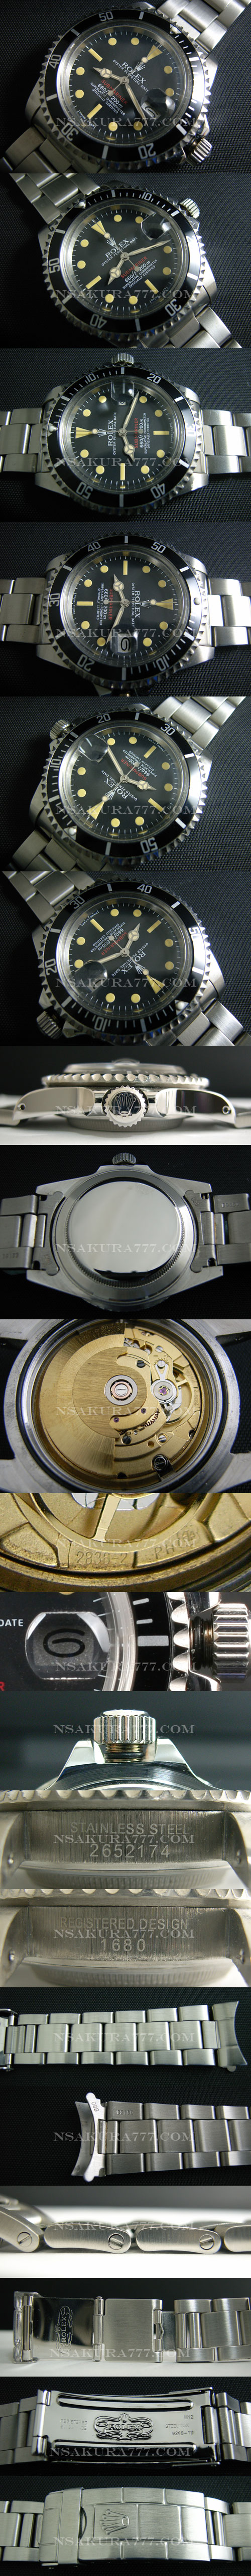 レプリカ時計ロレックス サブマリーナ 旧型サブ廉価版2836-2ムーブ搭載 - ウインドウを閉じる